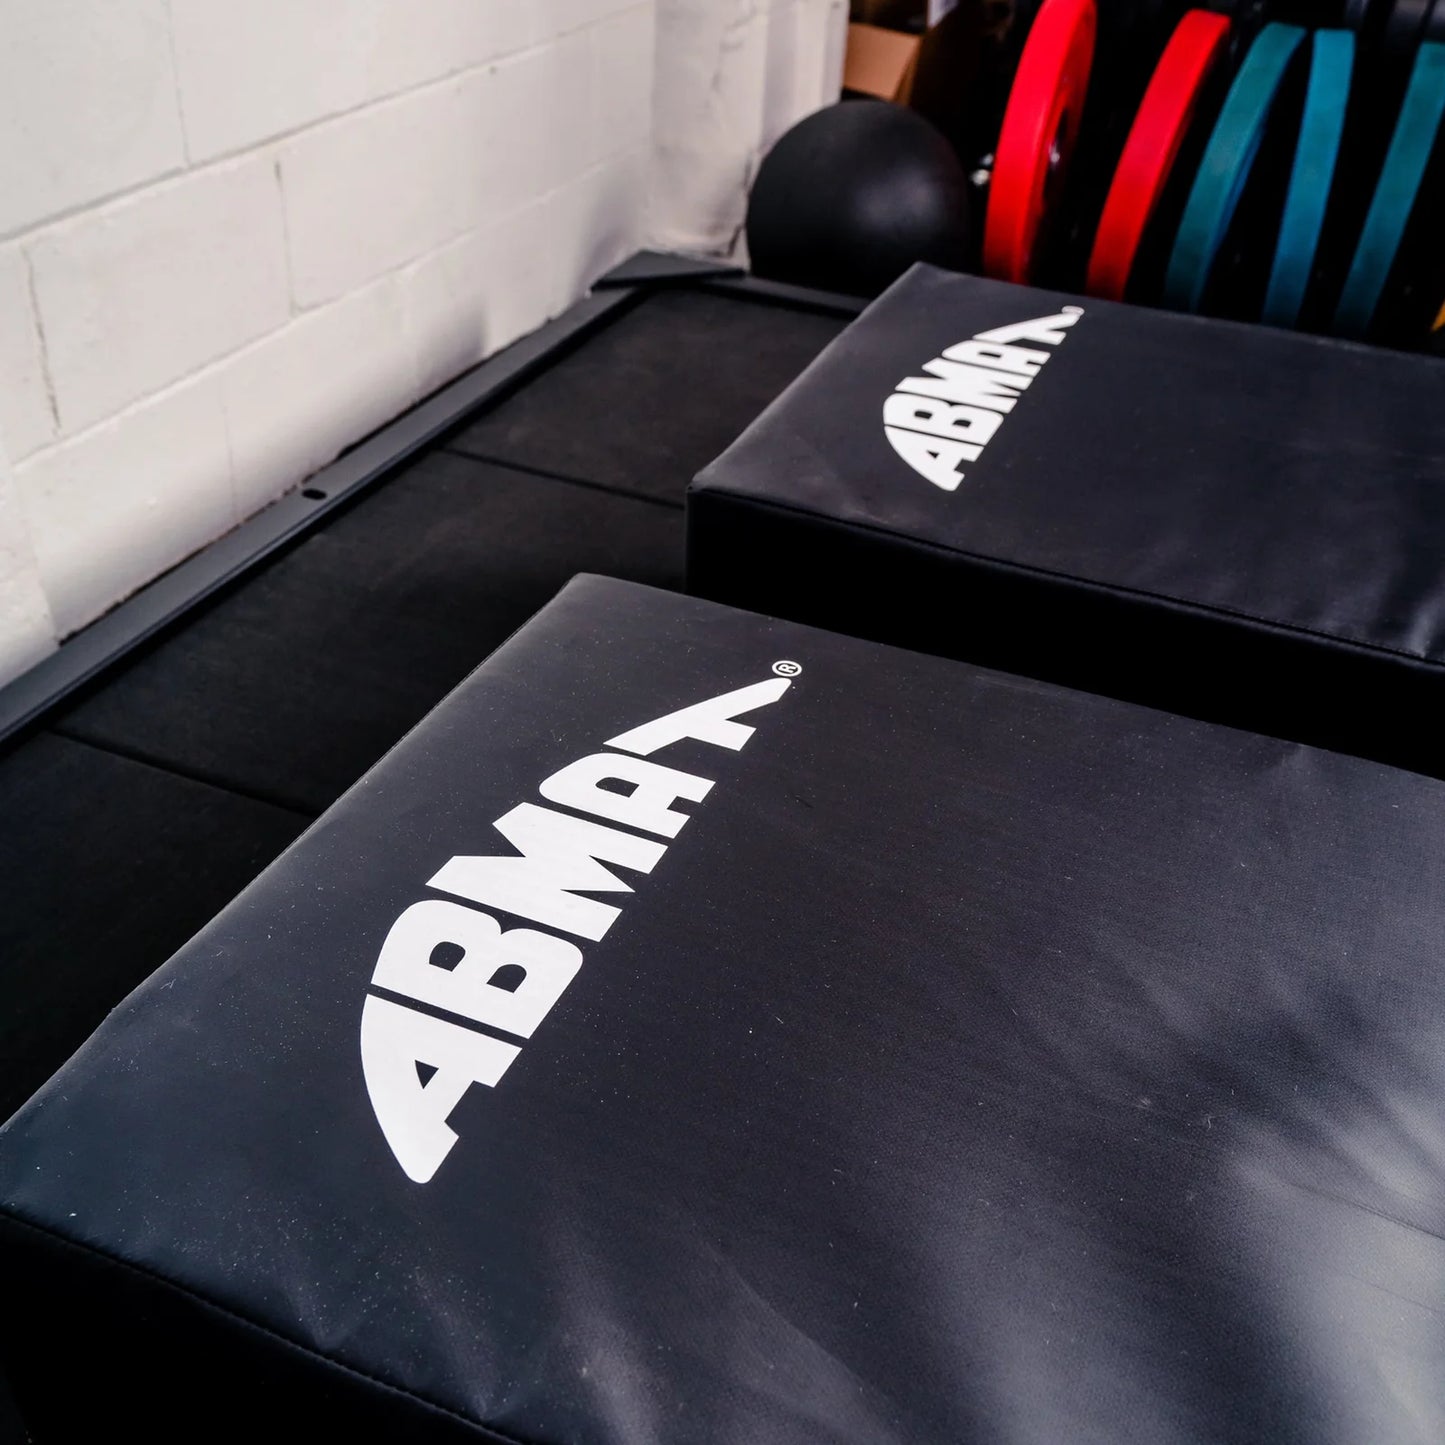 ABMAT - Log Crash Cushions (PAIR)